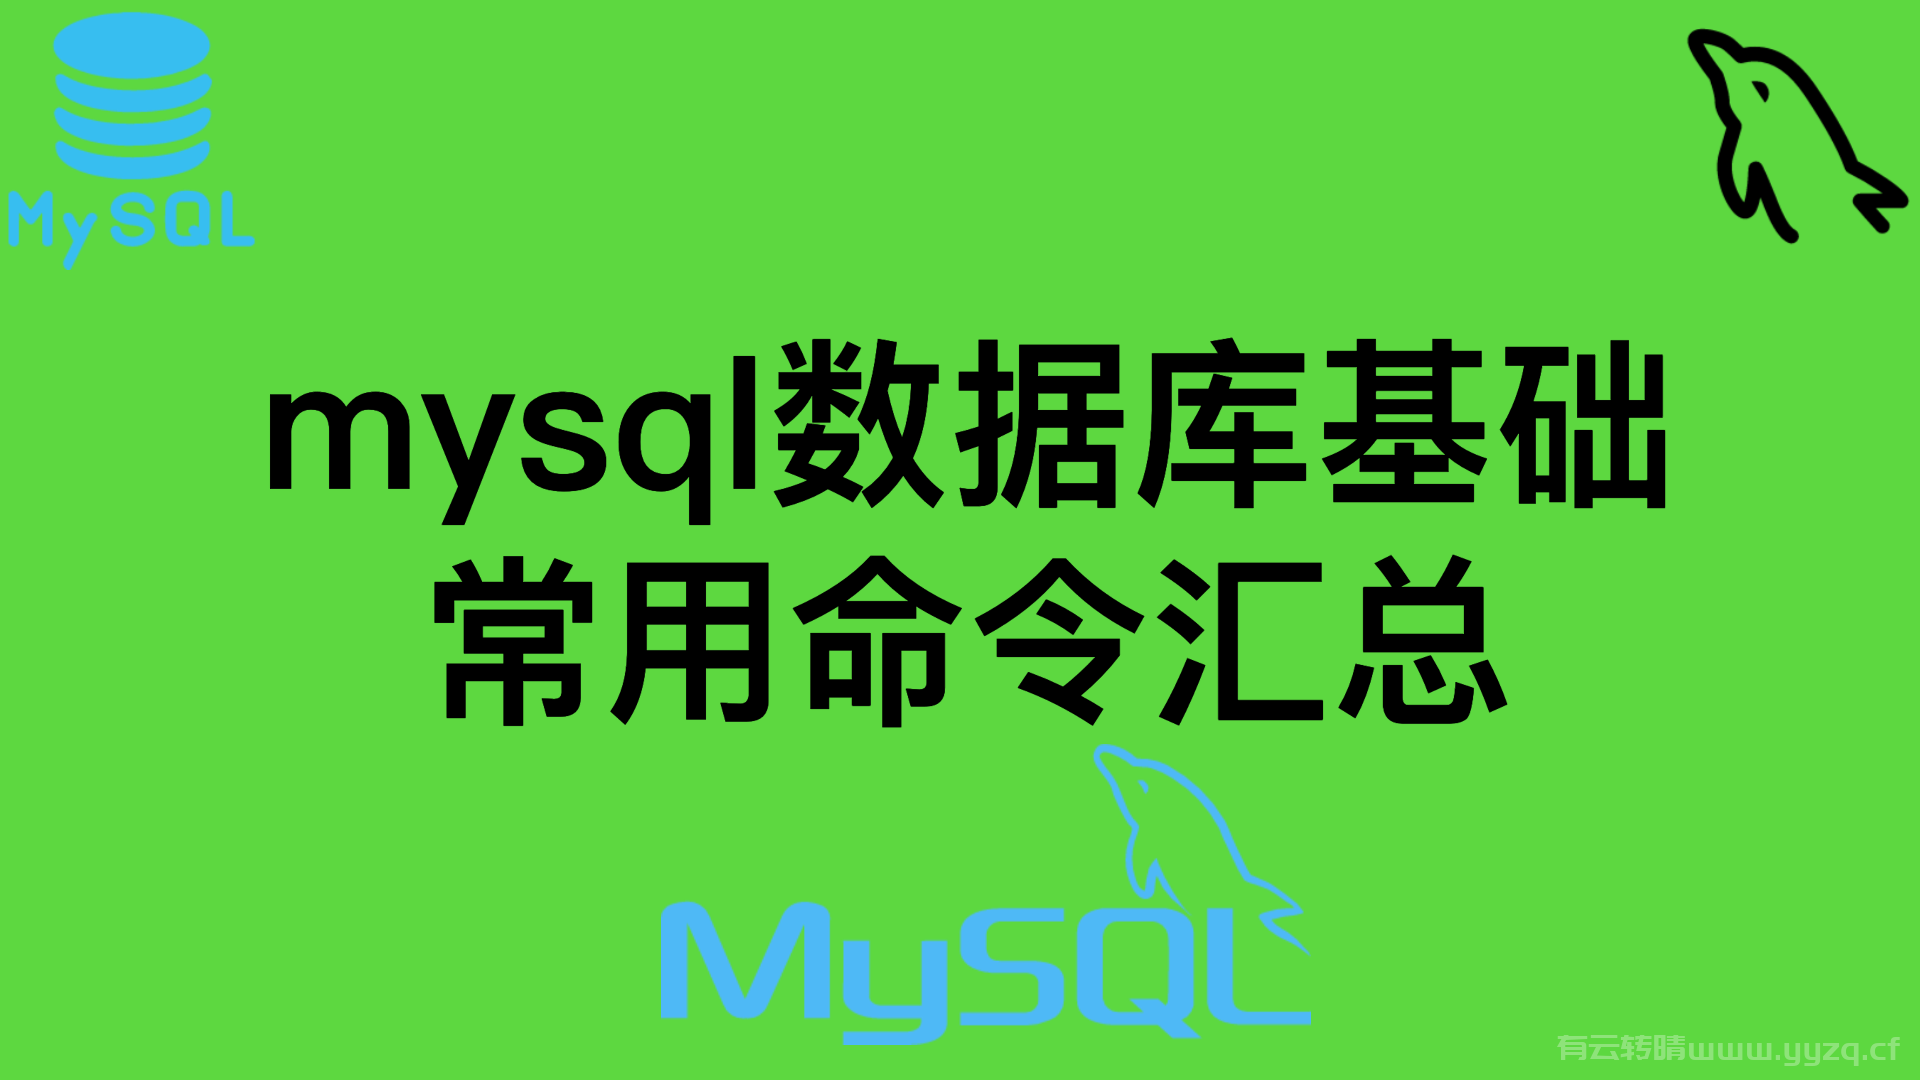 mysql数据基础常用命令汇总